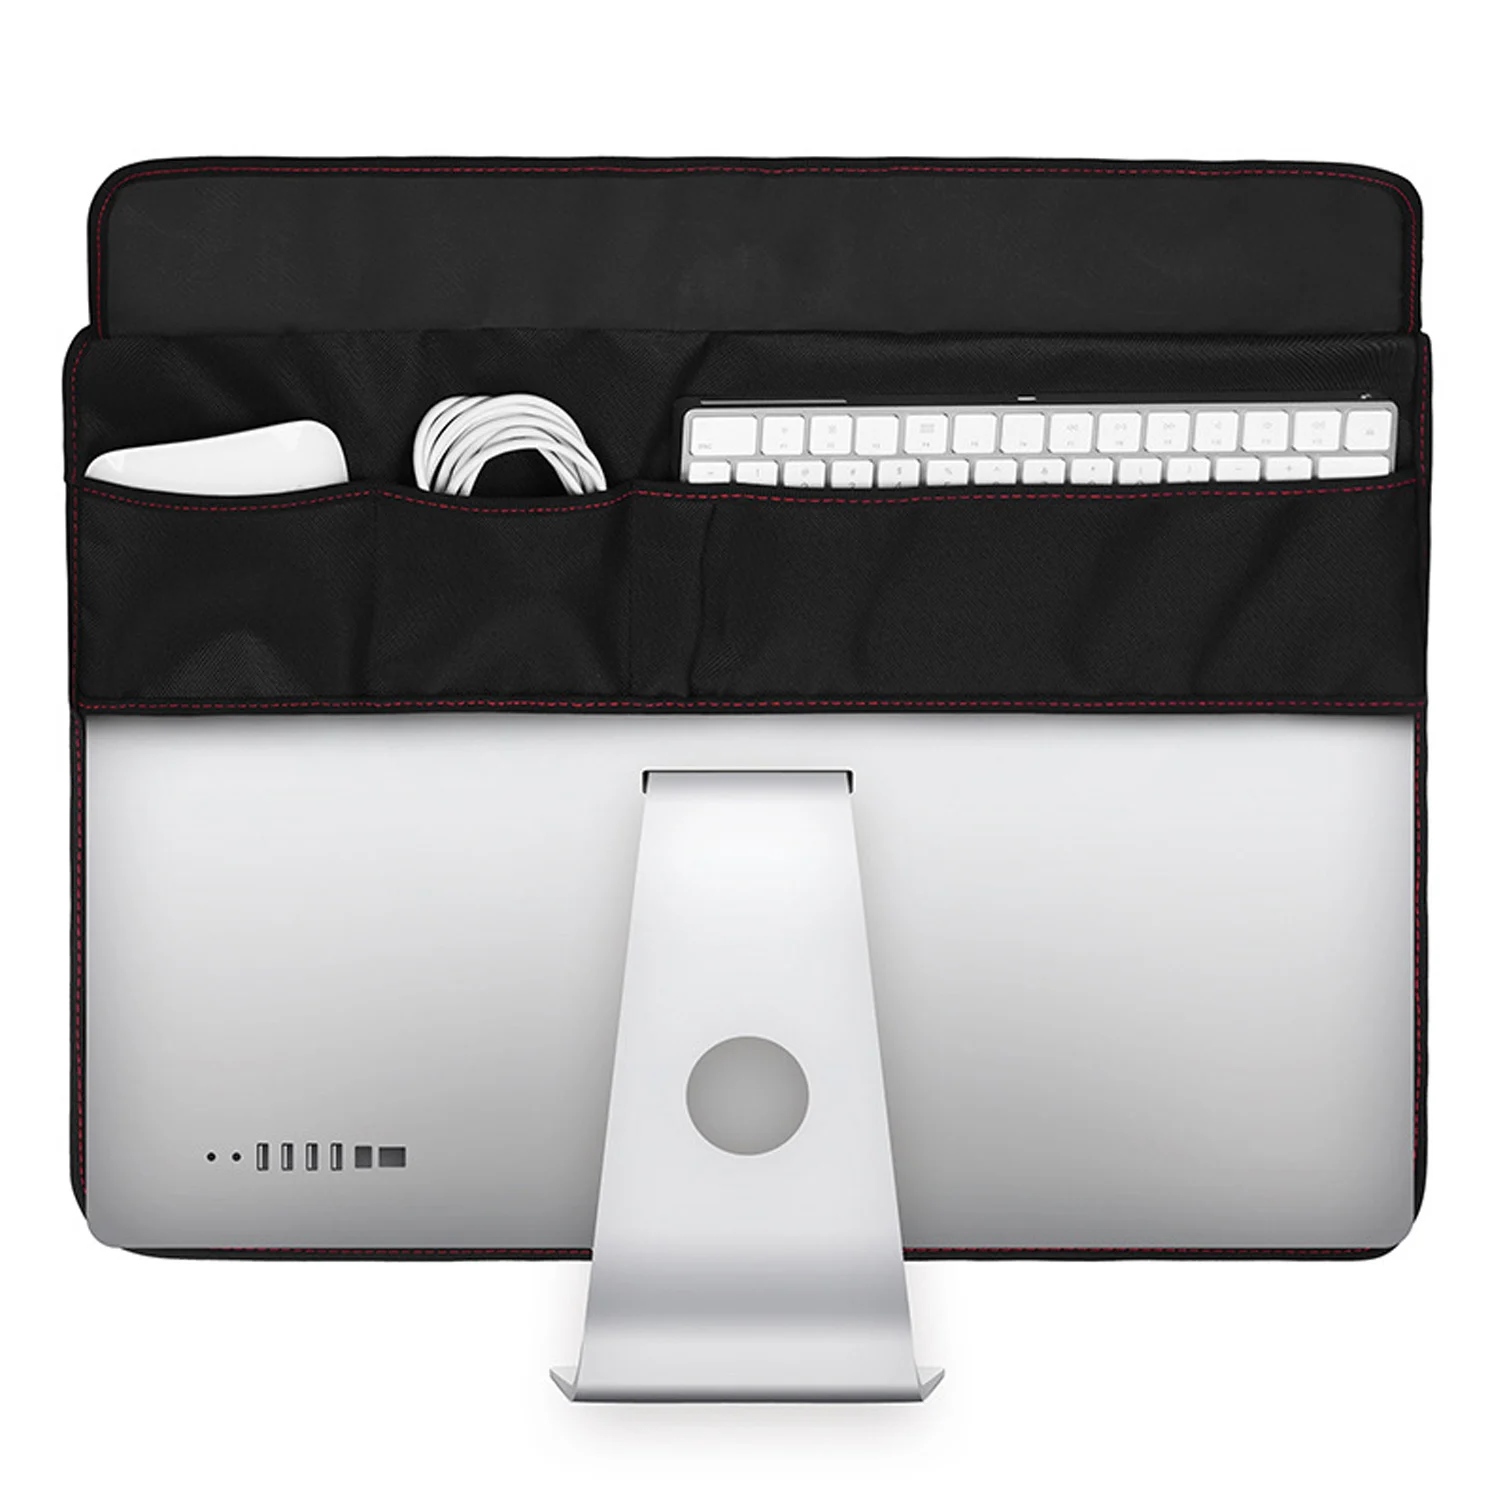 Водонепроницаемый пылезащитный чехол с карманами для 21 дюймов Apple iMac ЖК-экран компьютерный монитор черный